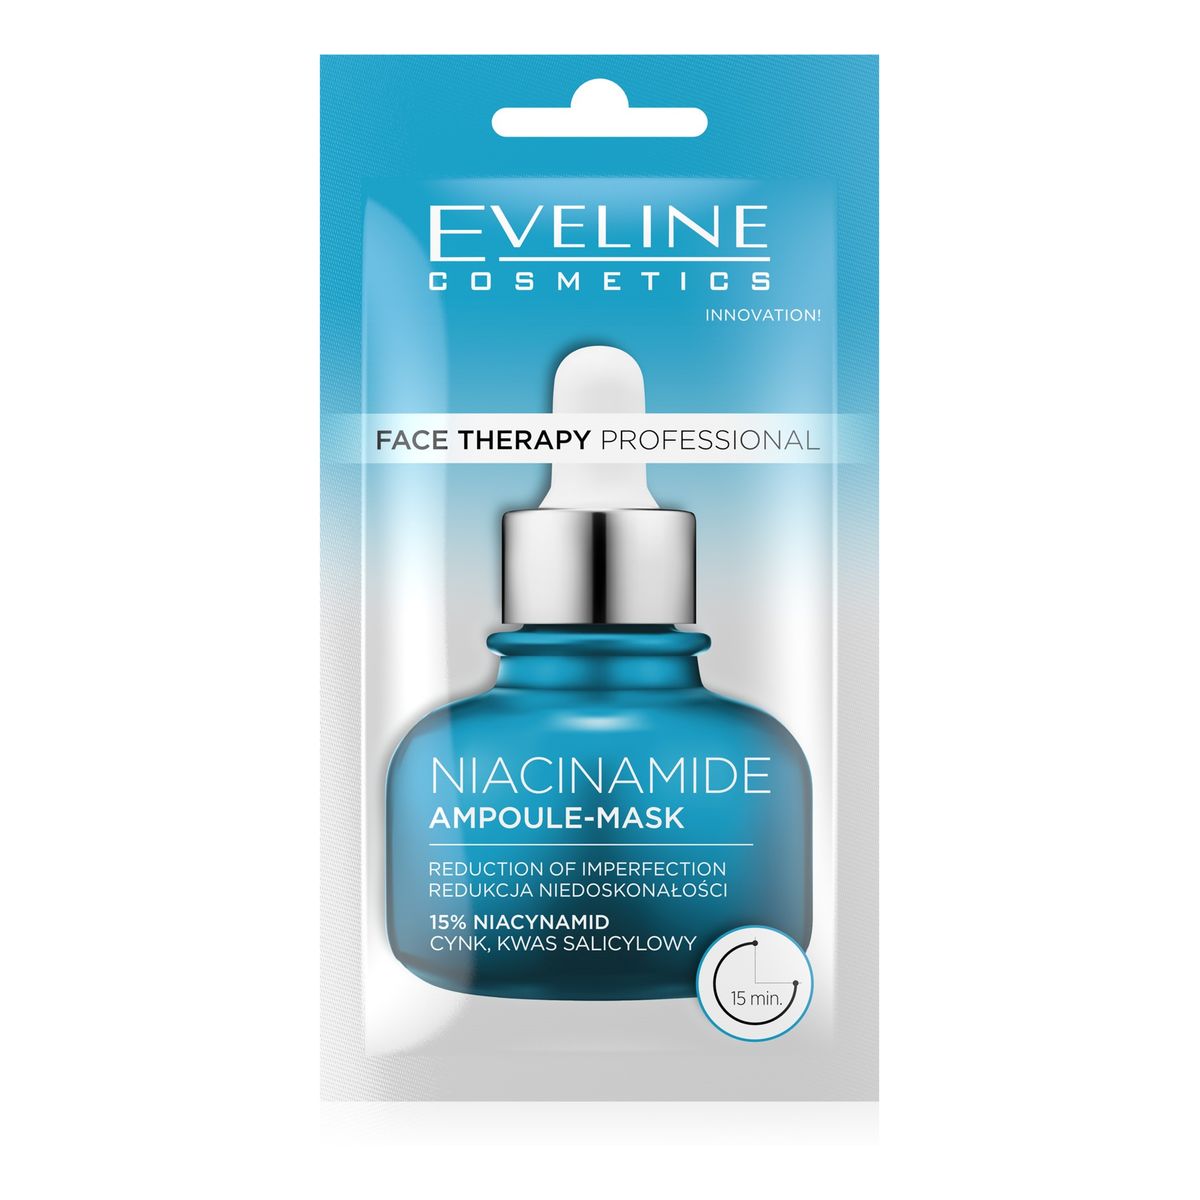 Eveline Face therapy professional maska-ampułka redukująca niedoskonałości z niacynamidem 8 ml